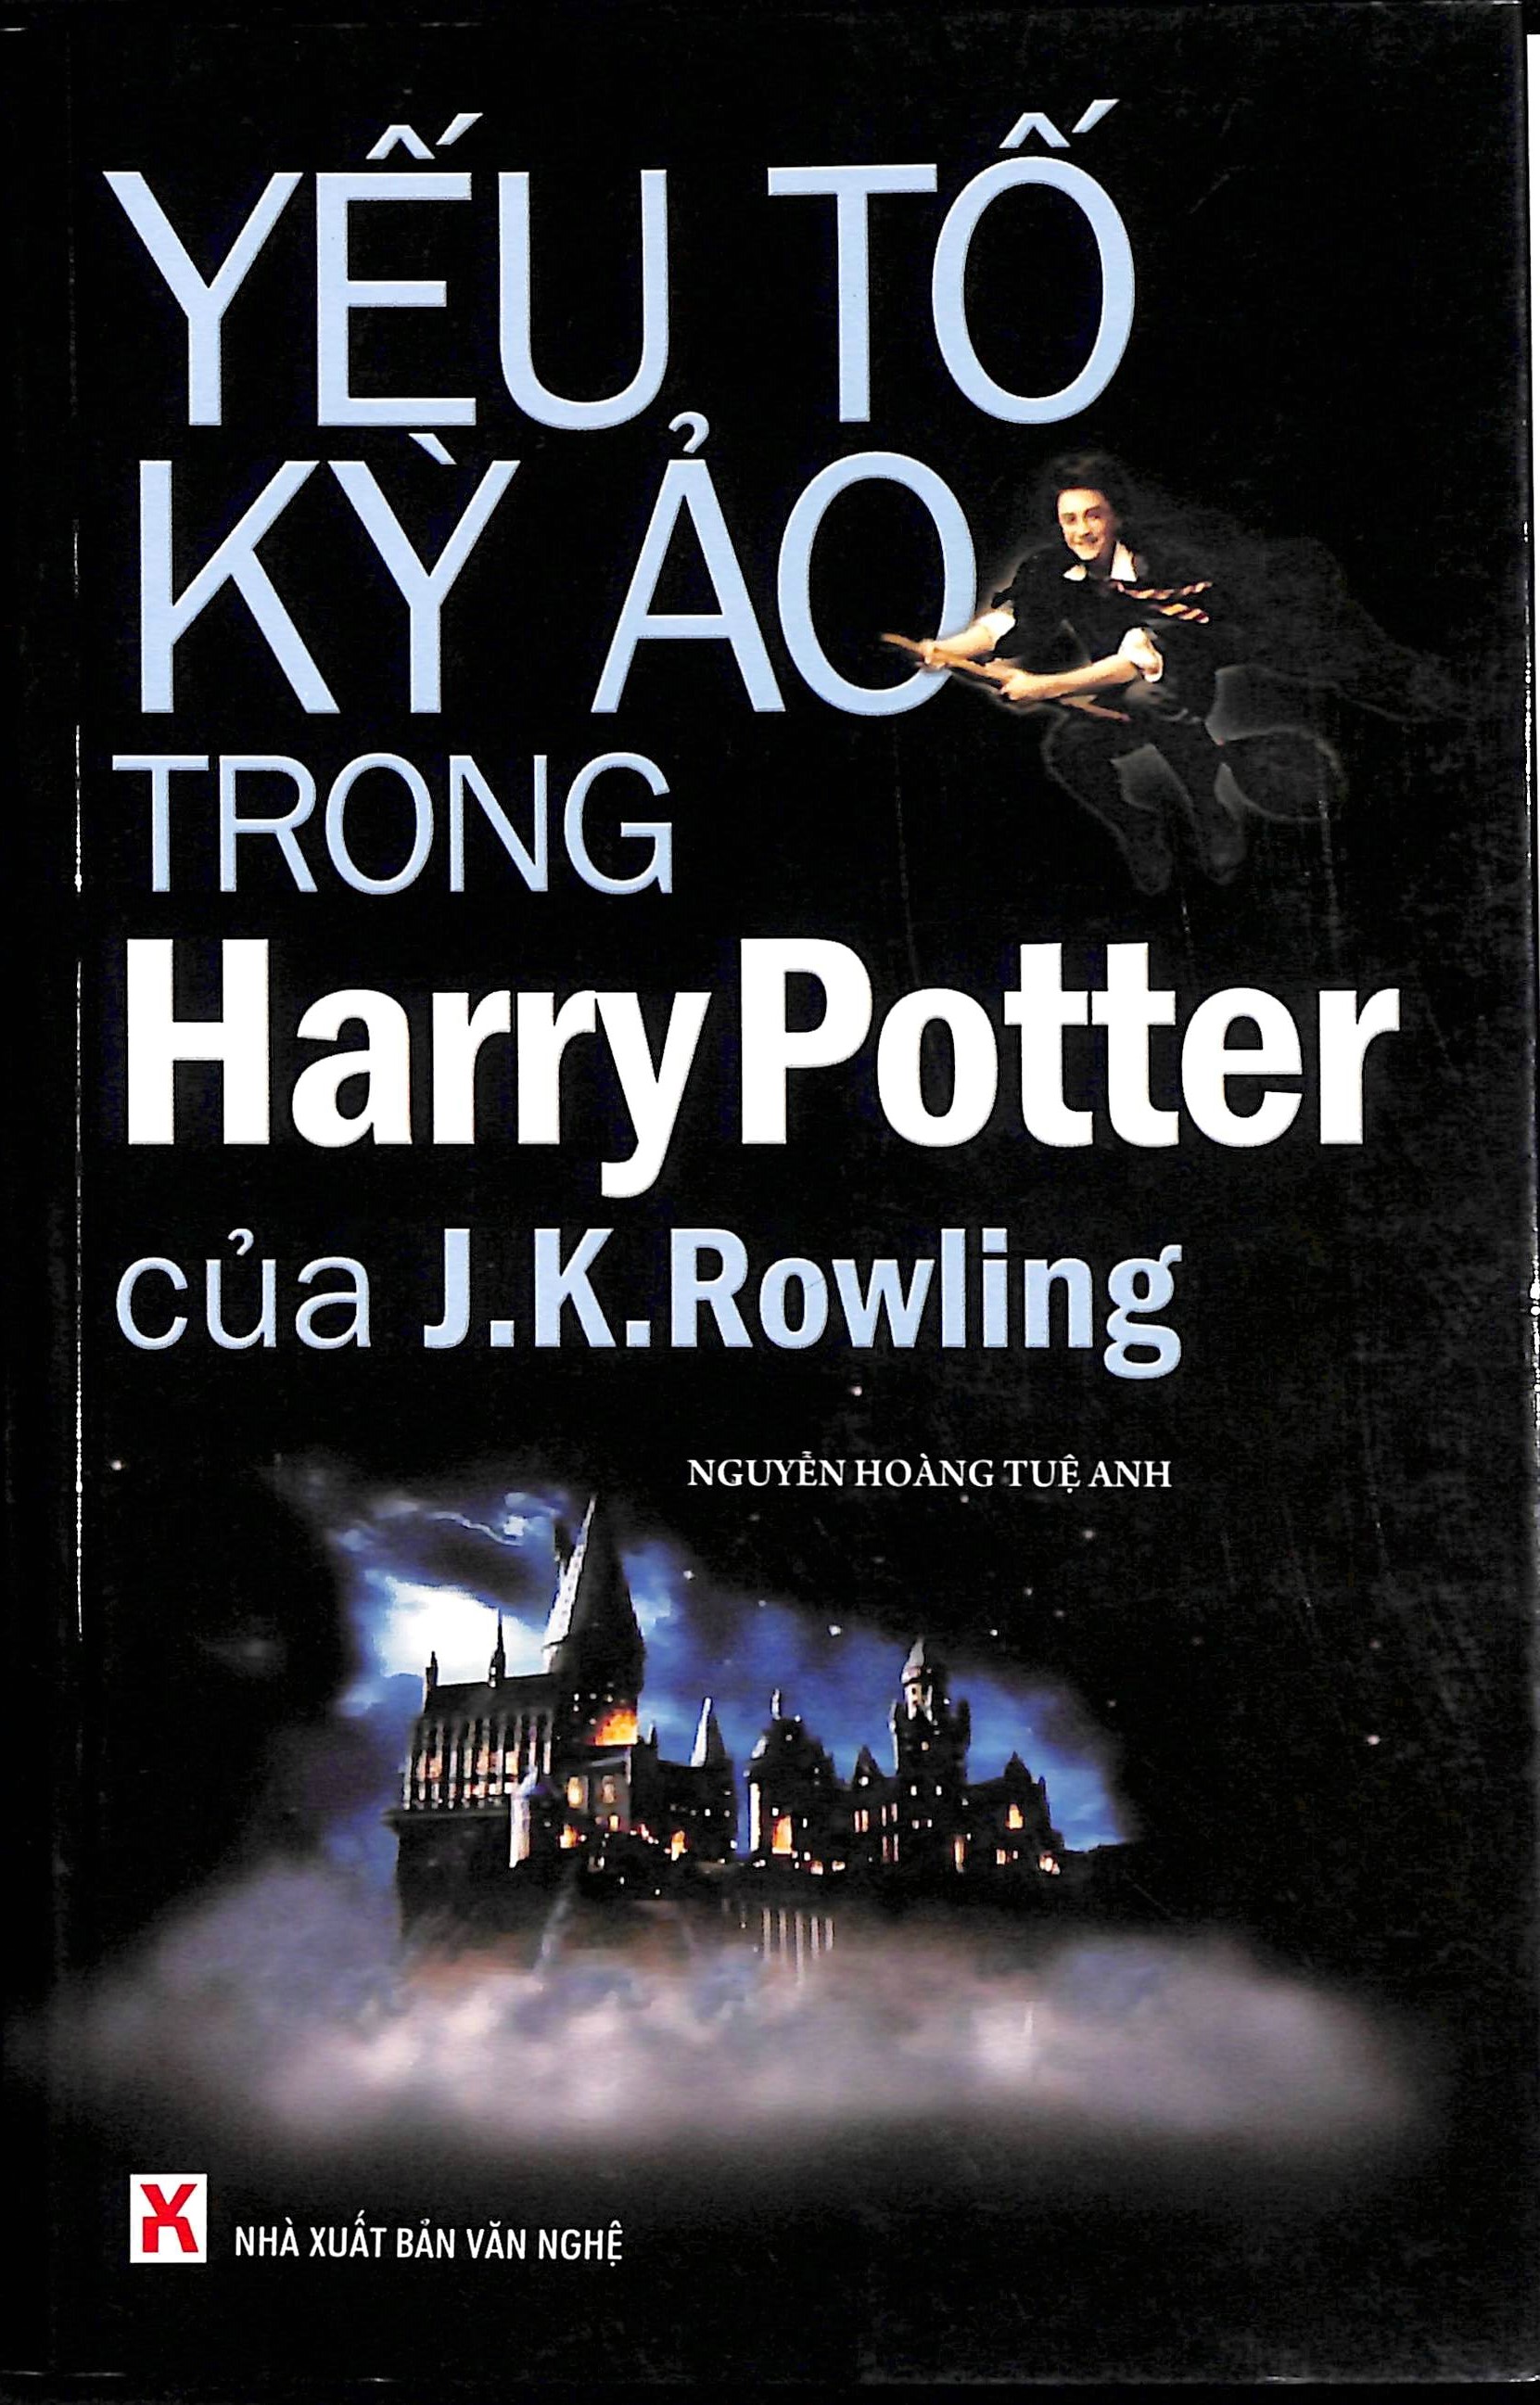 Yếu tố kì ảo trong Harry Potter của J.K.Rowling